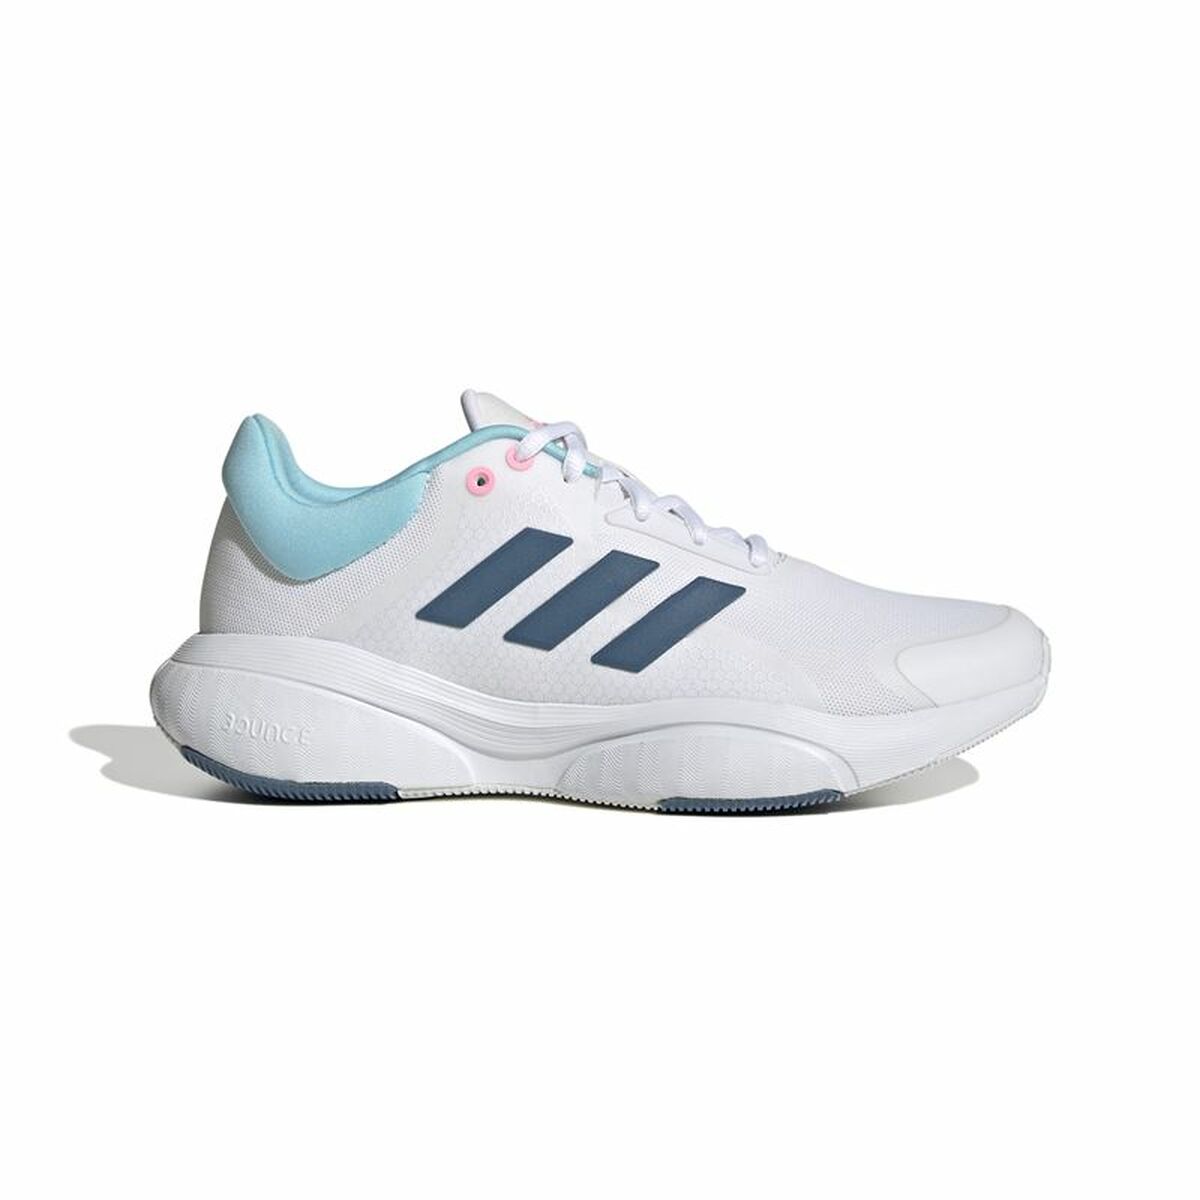 Încălțăminte de Running pentru Adulți Adidas Response Femeie Alb - Mărime la picior 37 1/3